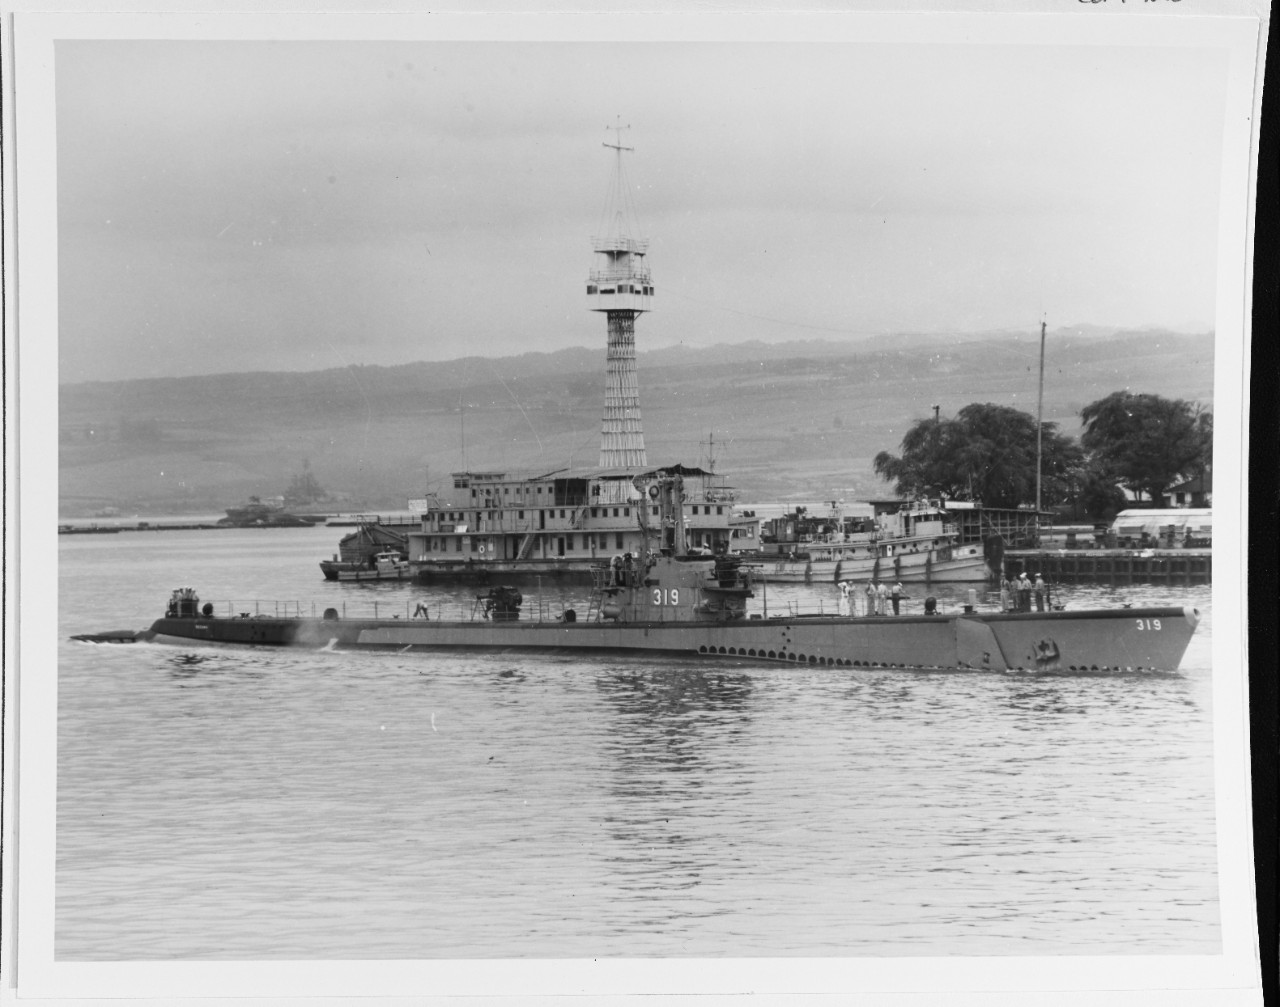 USS BECUNA (SS-319)